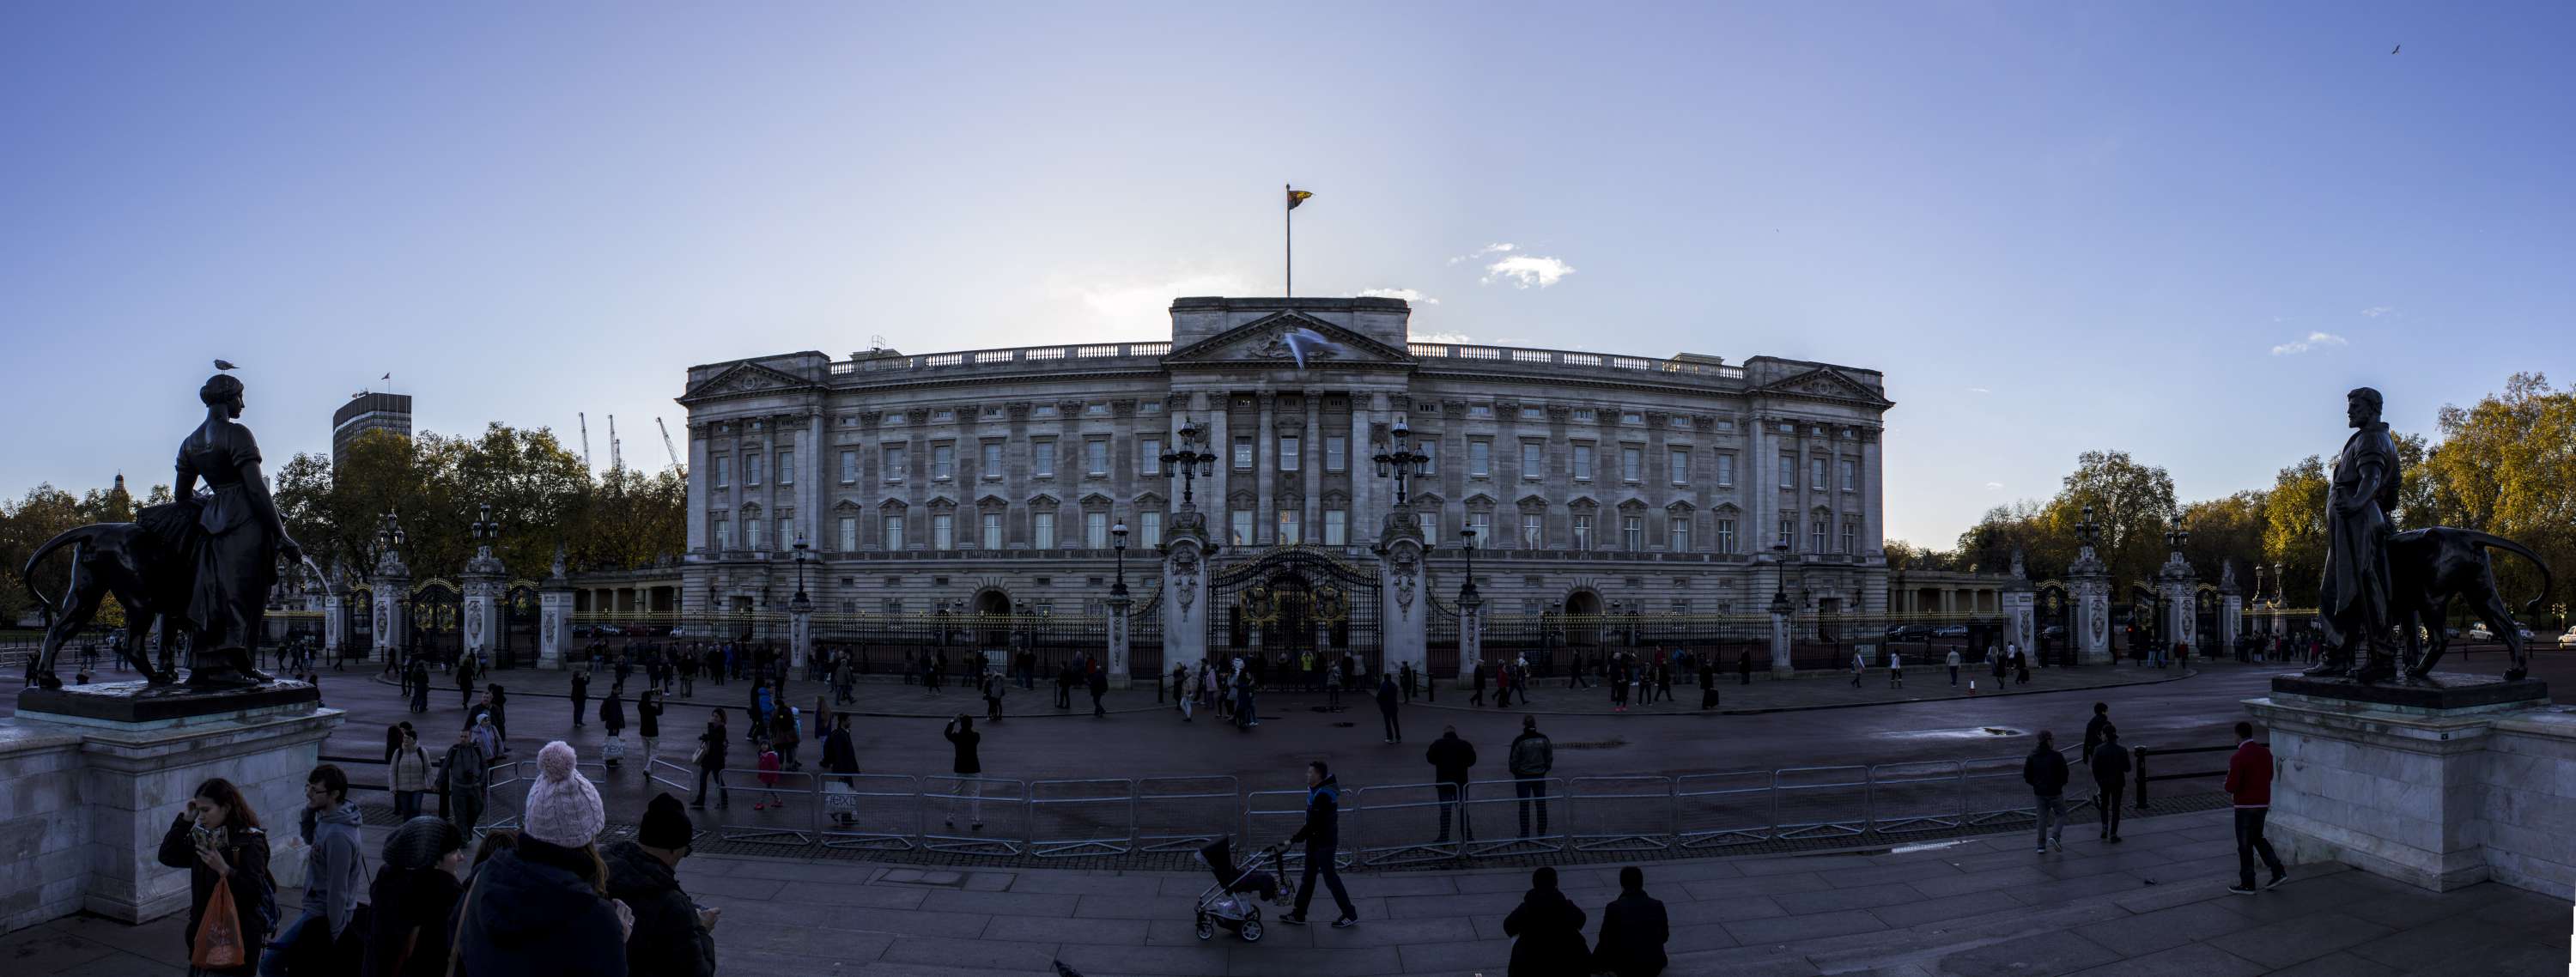 London Panorama_6_Buckingham Palace-3000.jpg